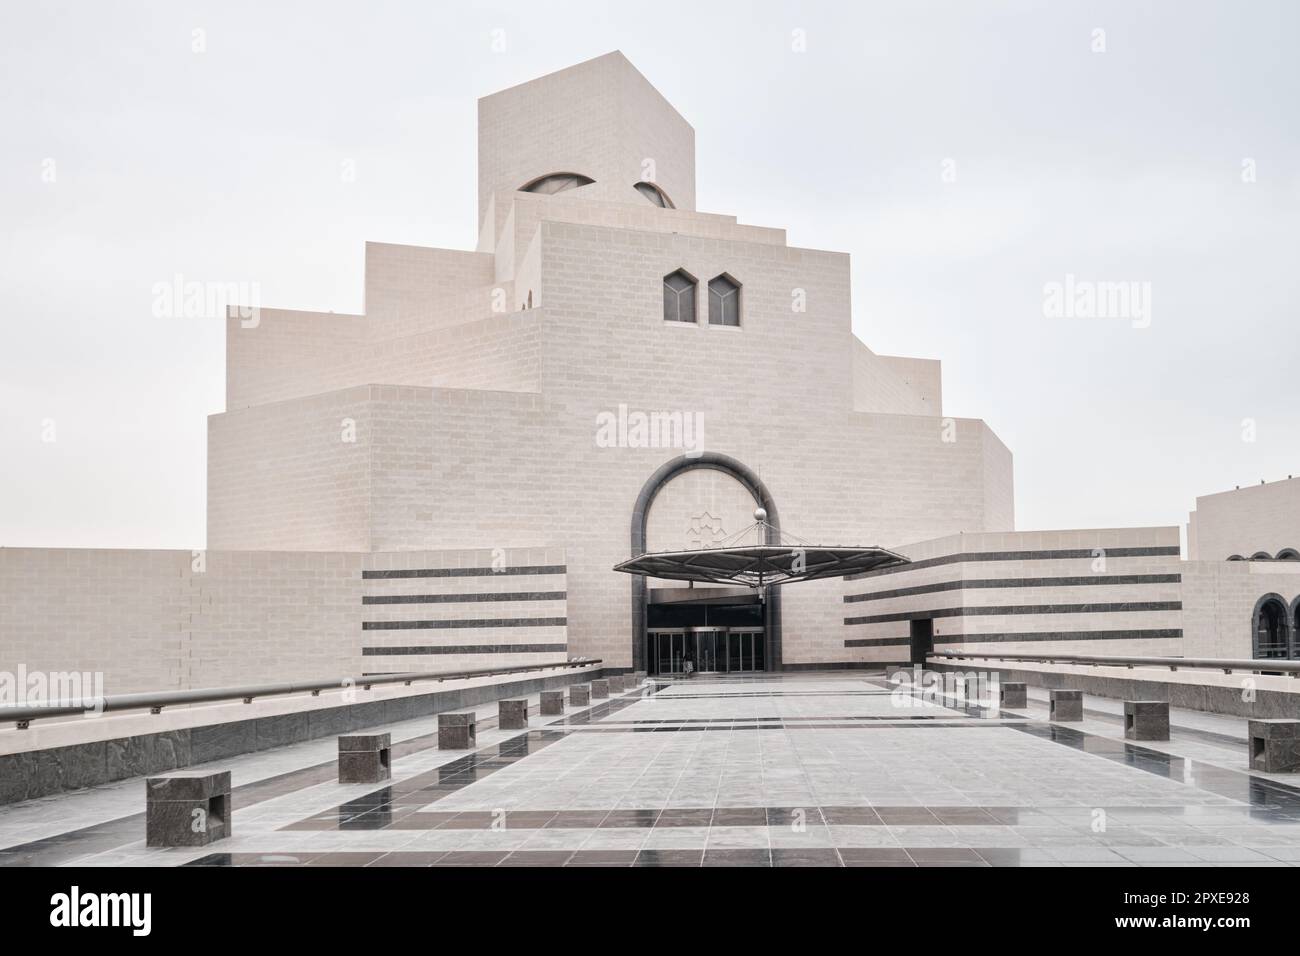 Doha, Katar - April 2023: Das berühmte Museum für islamische Kunst, das vom Architekten I. M. Pei entworfen wurde, befindet sich an der Corniche von Doha Stockfoto